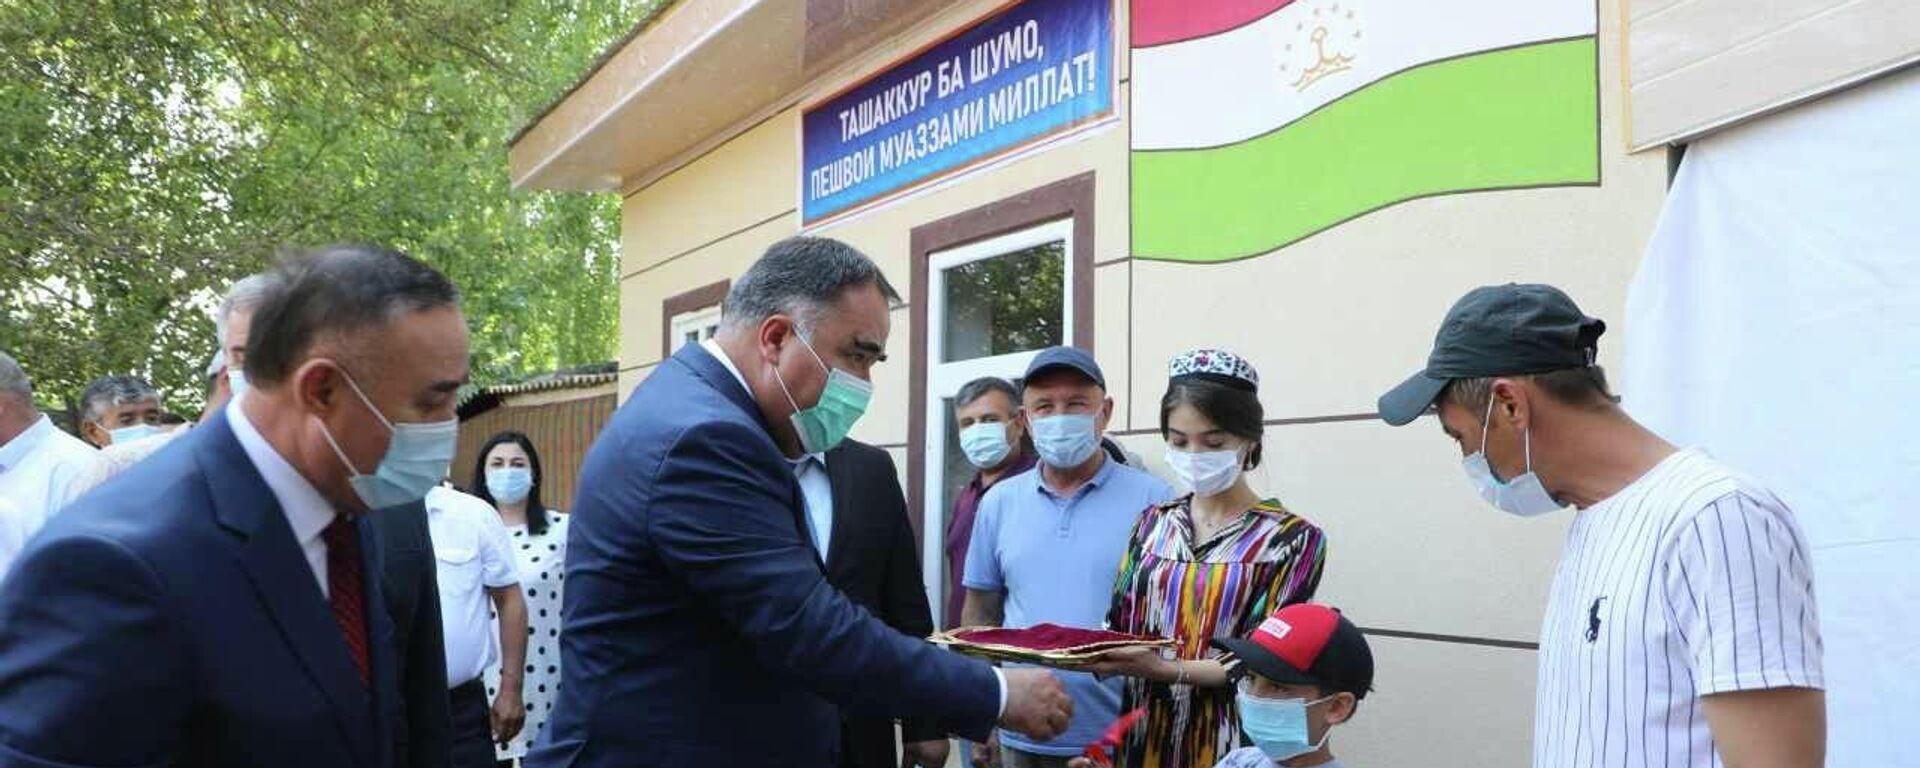 Председатель Согдийской области Раджаббой Ахмадзода вручил ключи от новых домов пострадавшим во время конфликта на таджикско-кыргызской границе - Sputnik Таджикистан, 1920, 03.07.2021